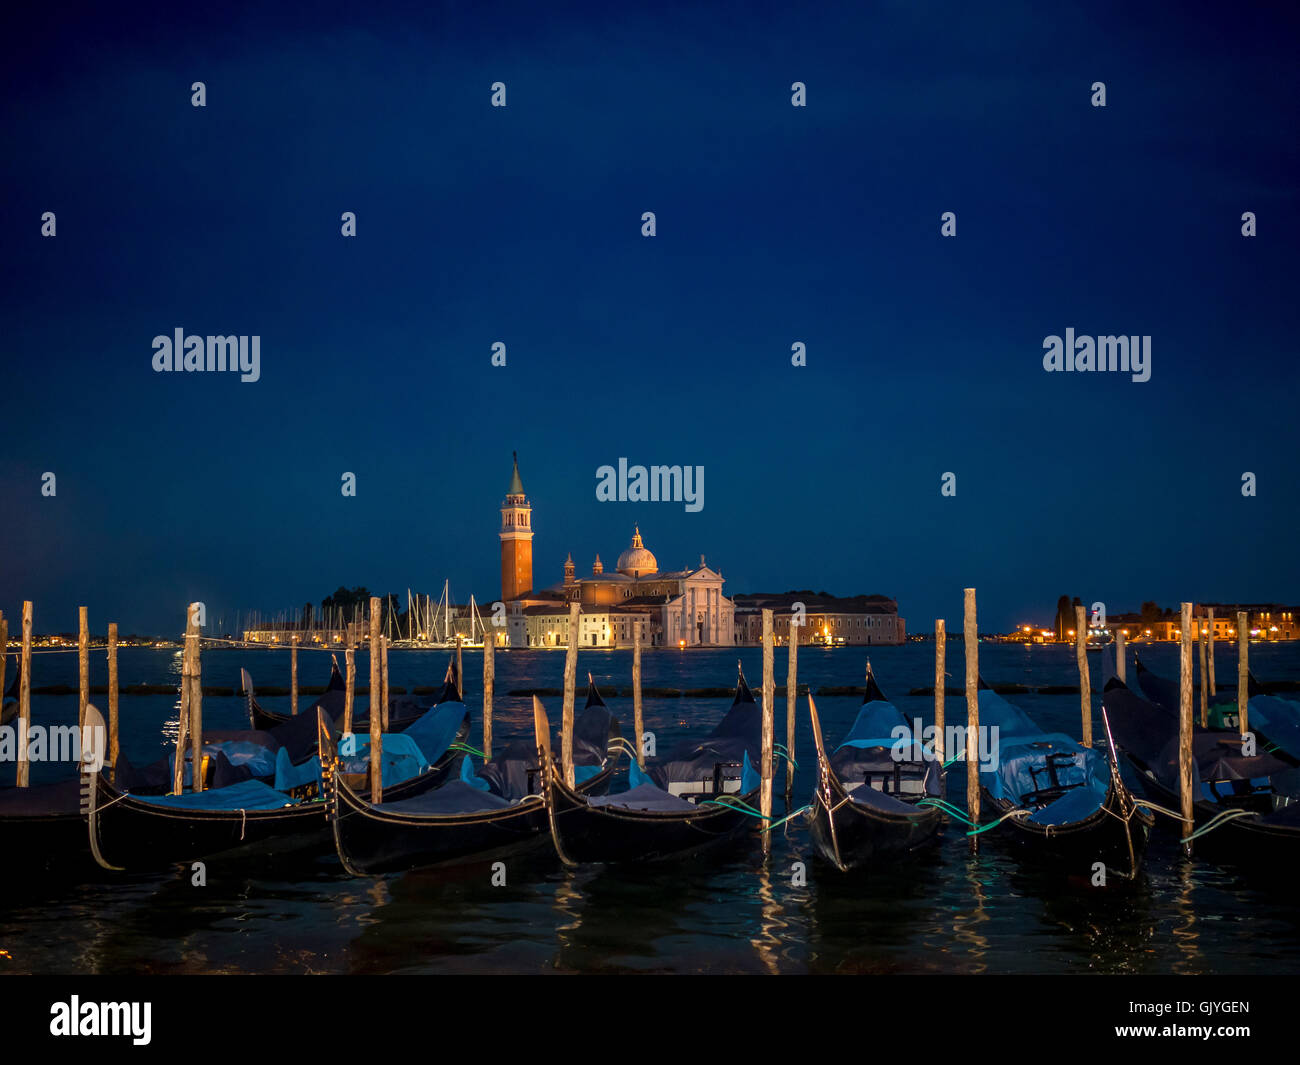 Las góndolas amarradas en la cuenca de San Marcos con San Giorgio Maggiore, en el fondo, por la noche. Venecia, Italia. Foto de stock